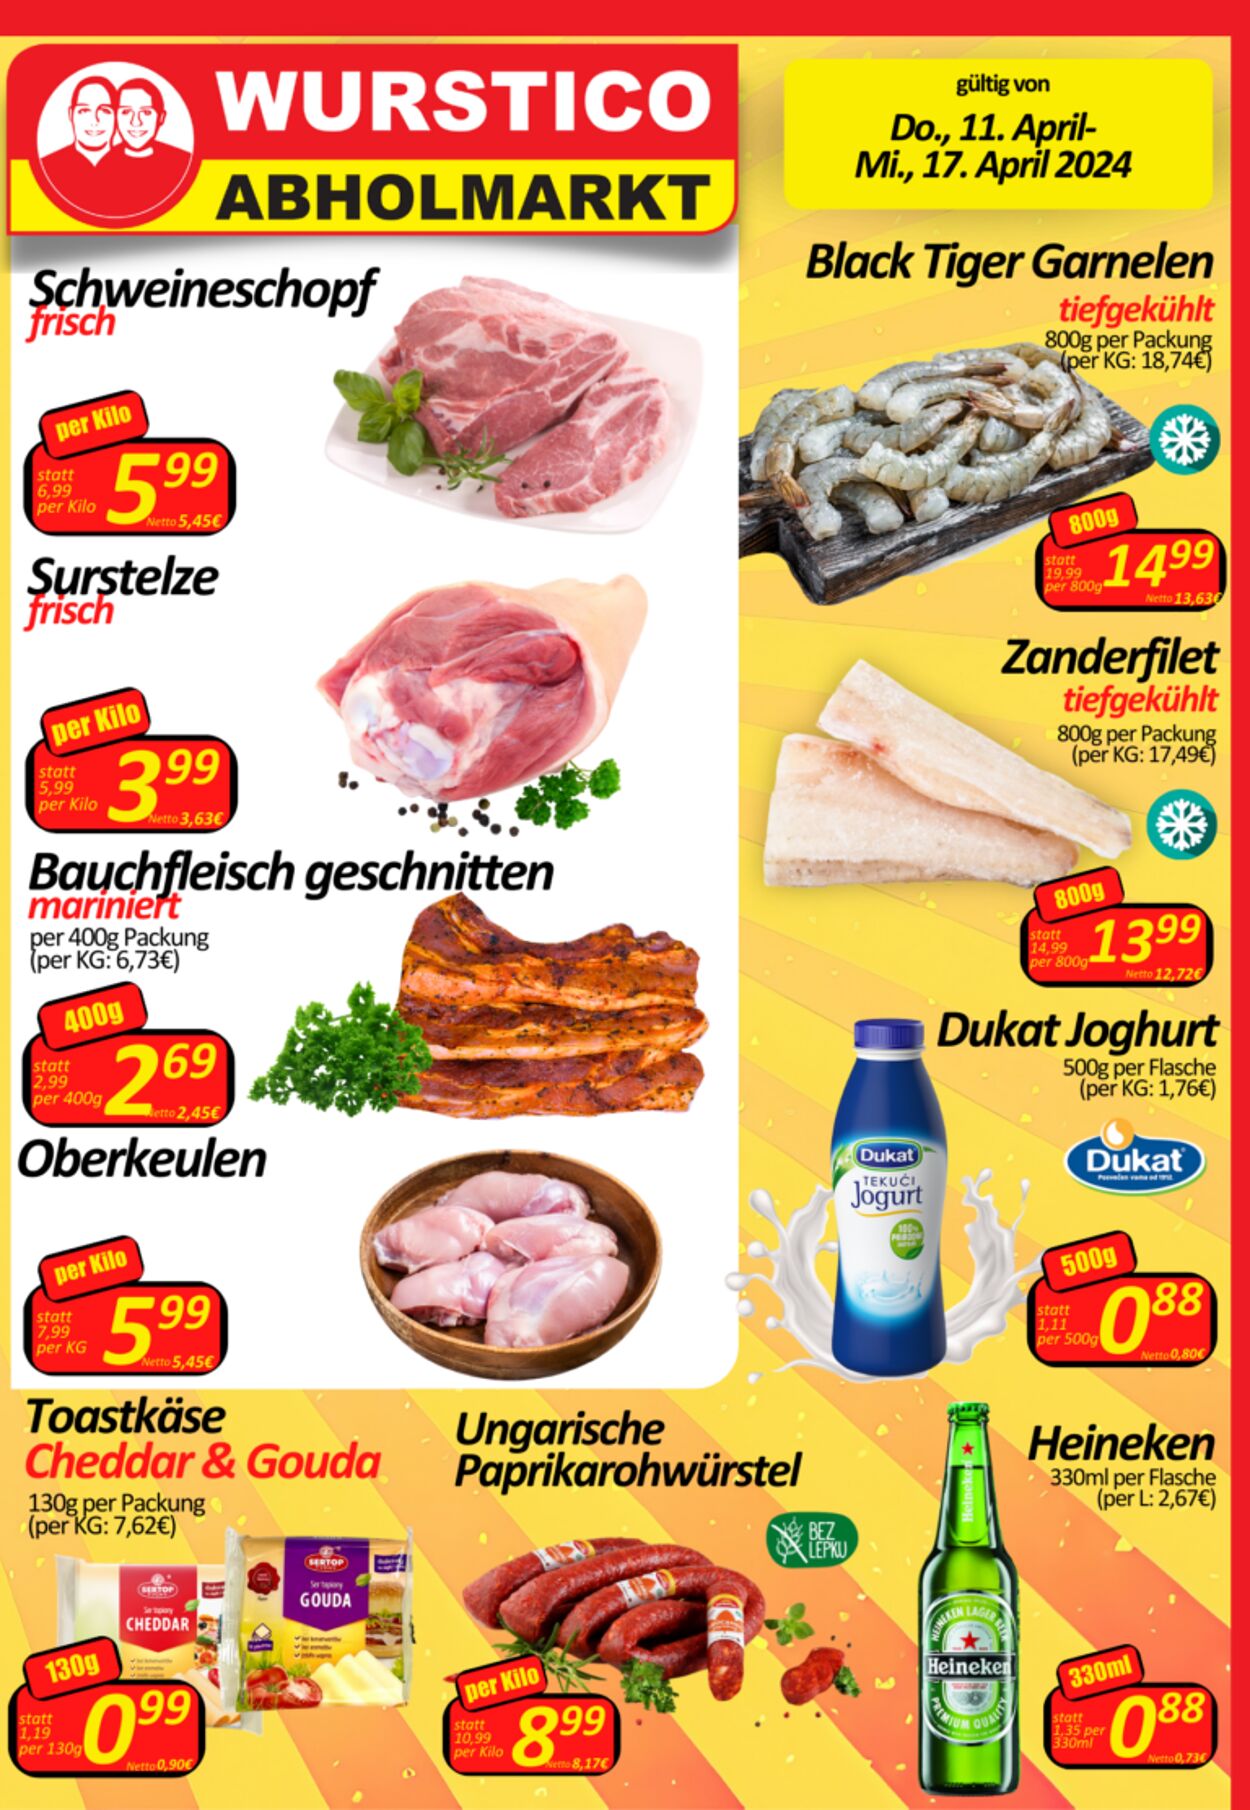 Prospekt Wurstico - Wurstico Abholmarkt – Wurst, Fleischwaren und mehr zu FabrikspreisenAktuelle Angebote bei Wurstico 11 Apr, 2024 - 17 Apr, 2024